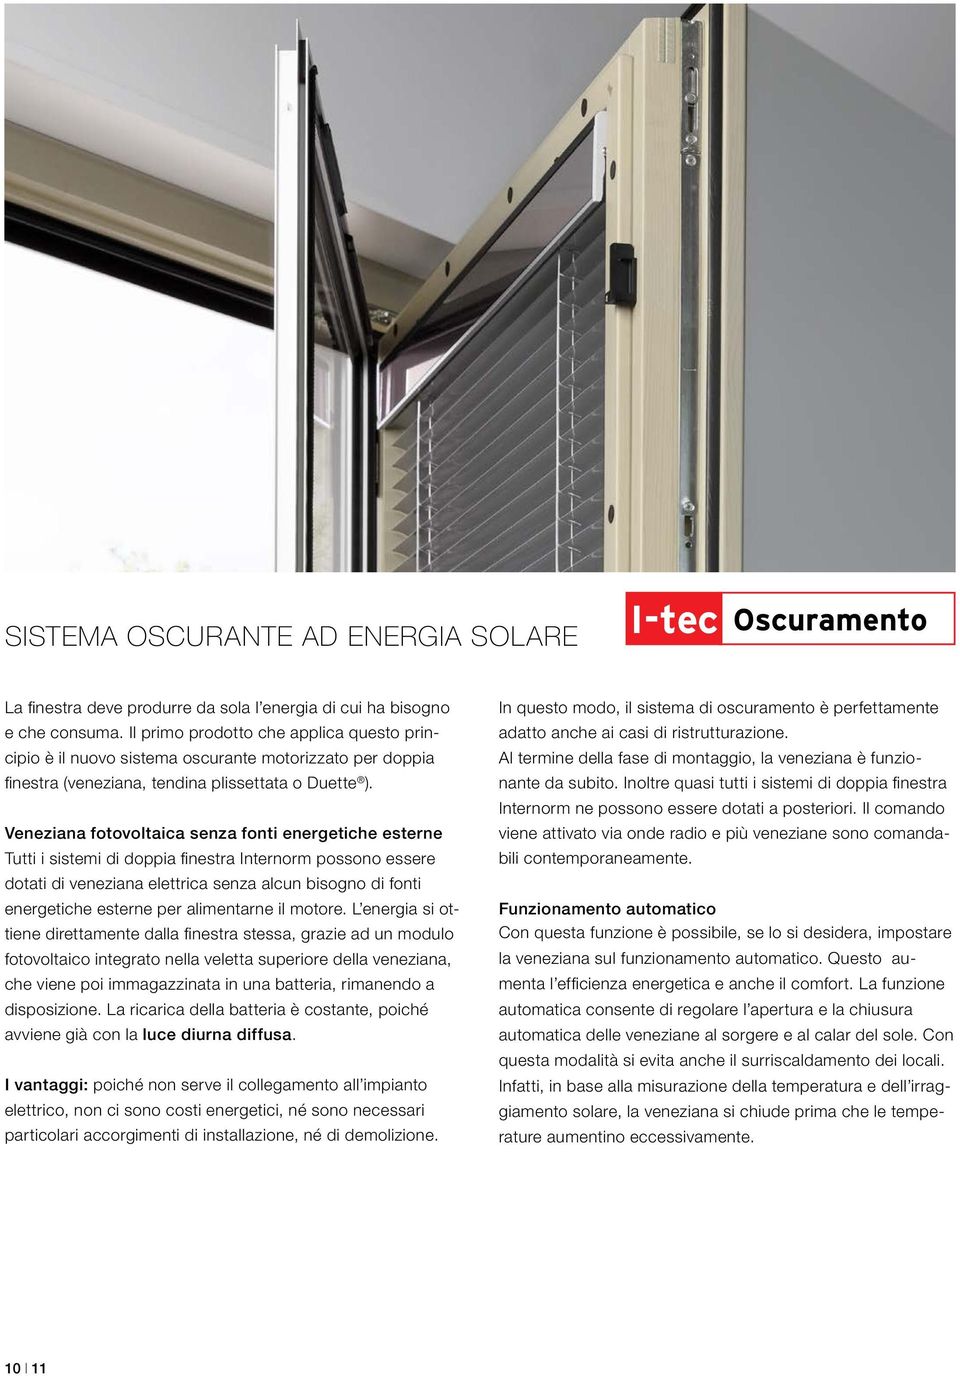 Veneziana fotovoltaica senza fonti energetiche esterne Tutti i sistemi di doppia finestra Internorm possono essere dotati di veneziana elettrica senza alcun bisogno di fonti energetiche esterne per